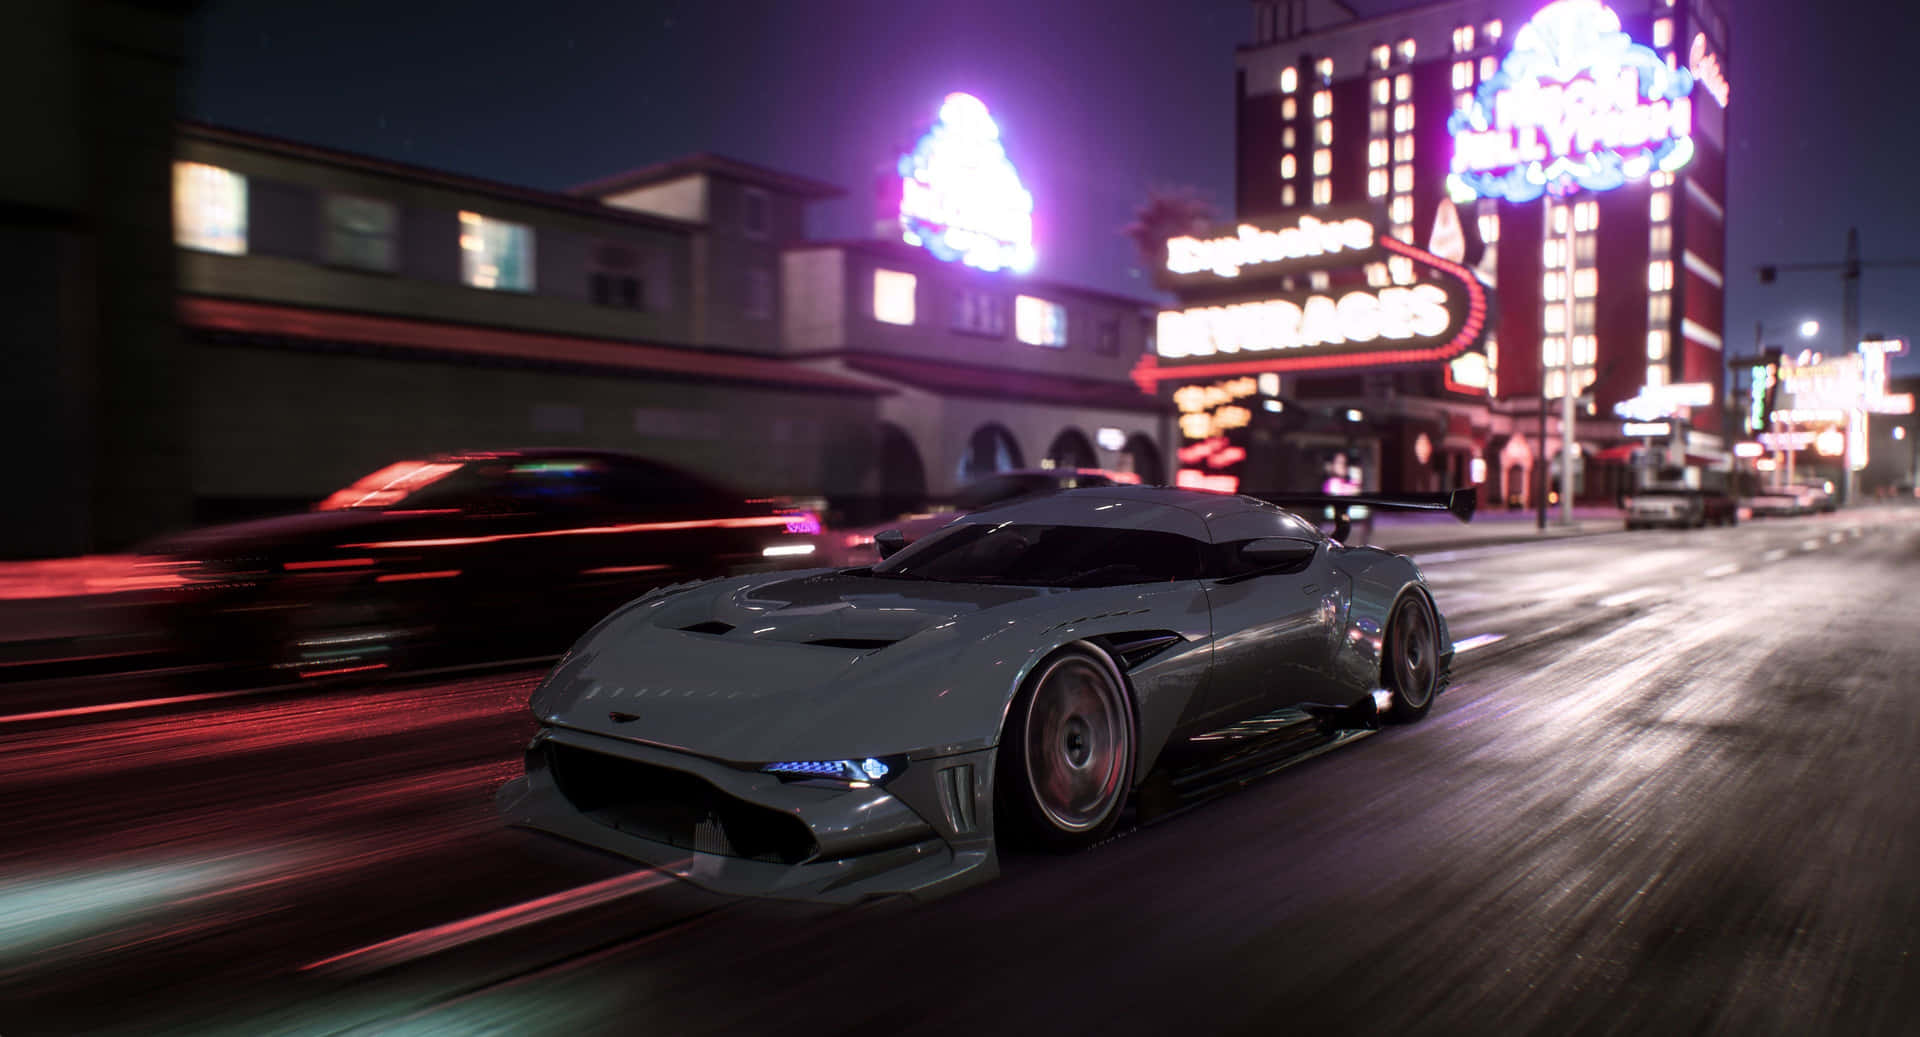 Upplevspänningen På Racerbana Med Need For Speed 4k Som Ditt Datorskärms- Eller Mobilskärmsbakgrund. Wallpaper